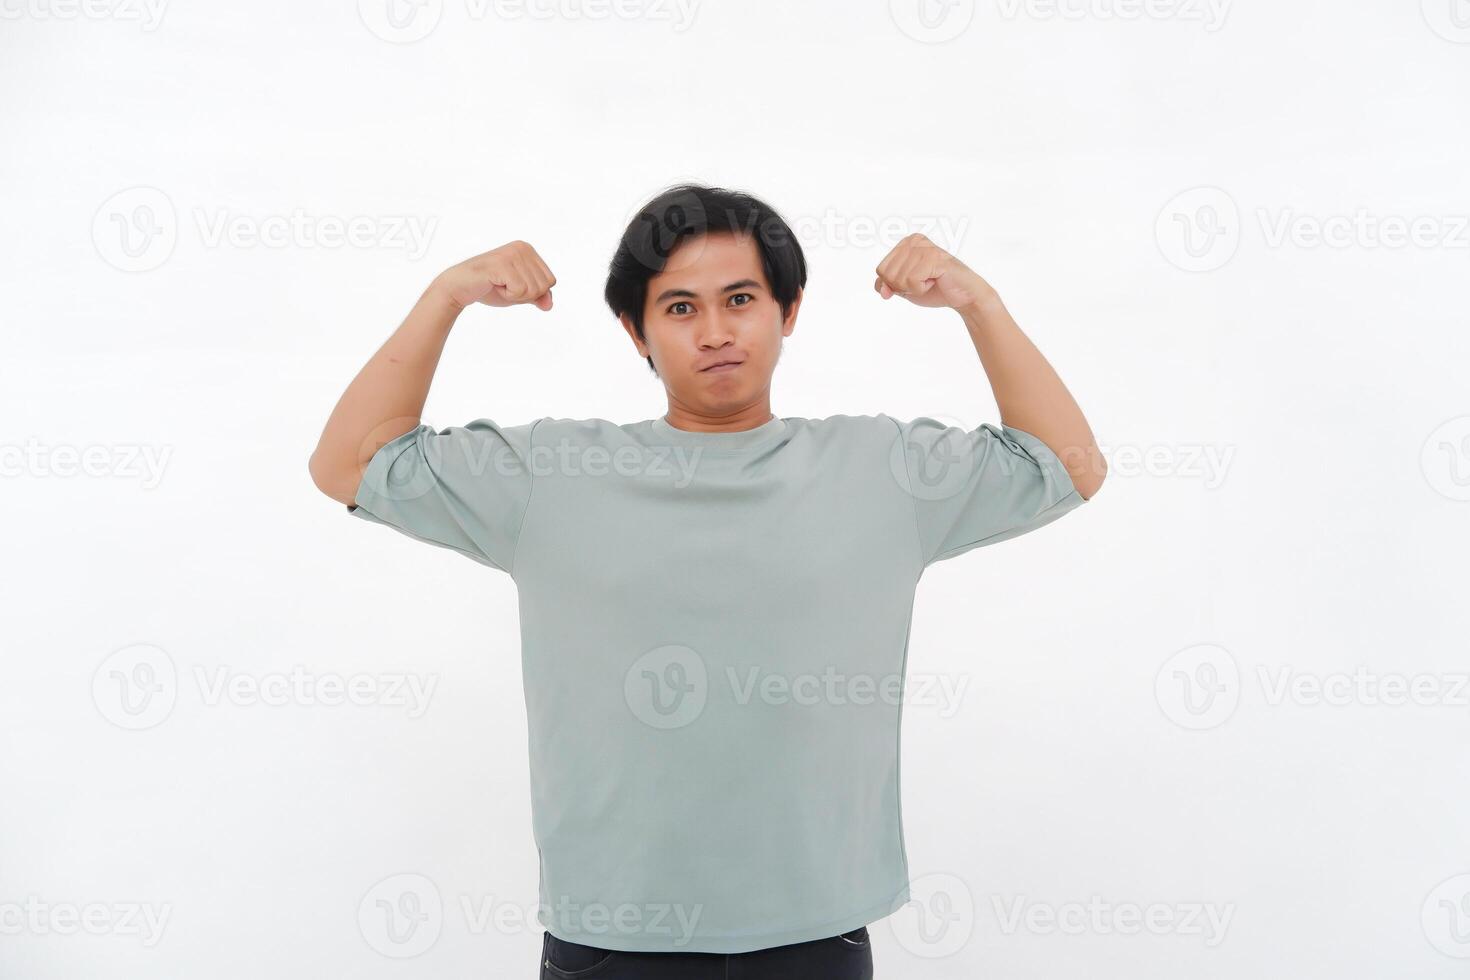 Jeune asiatique homme soulève main, exprimer force avec varié émotions de sourit à colère photo